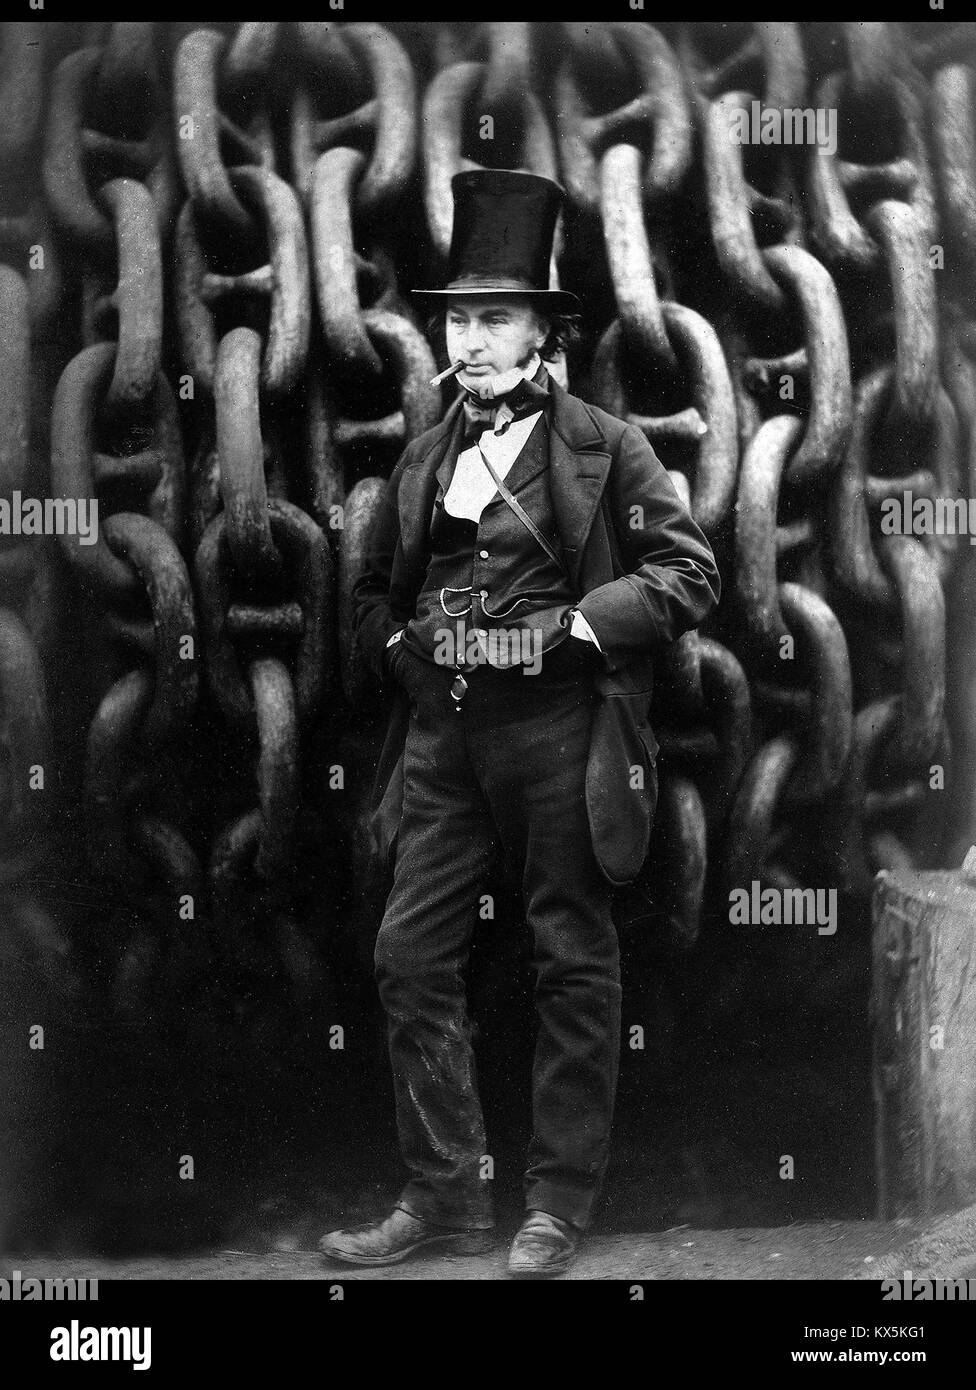 Isambard Kingdom Brunel, ingénieur civil et mécanique Anglais Banque D'Images